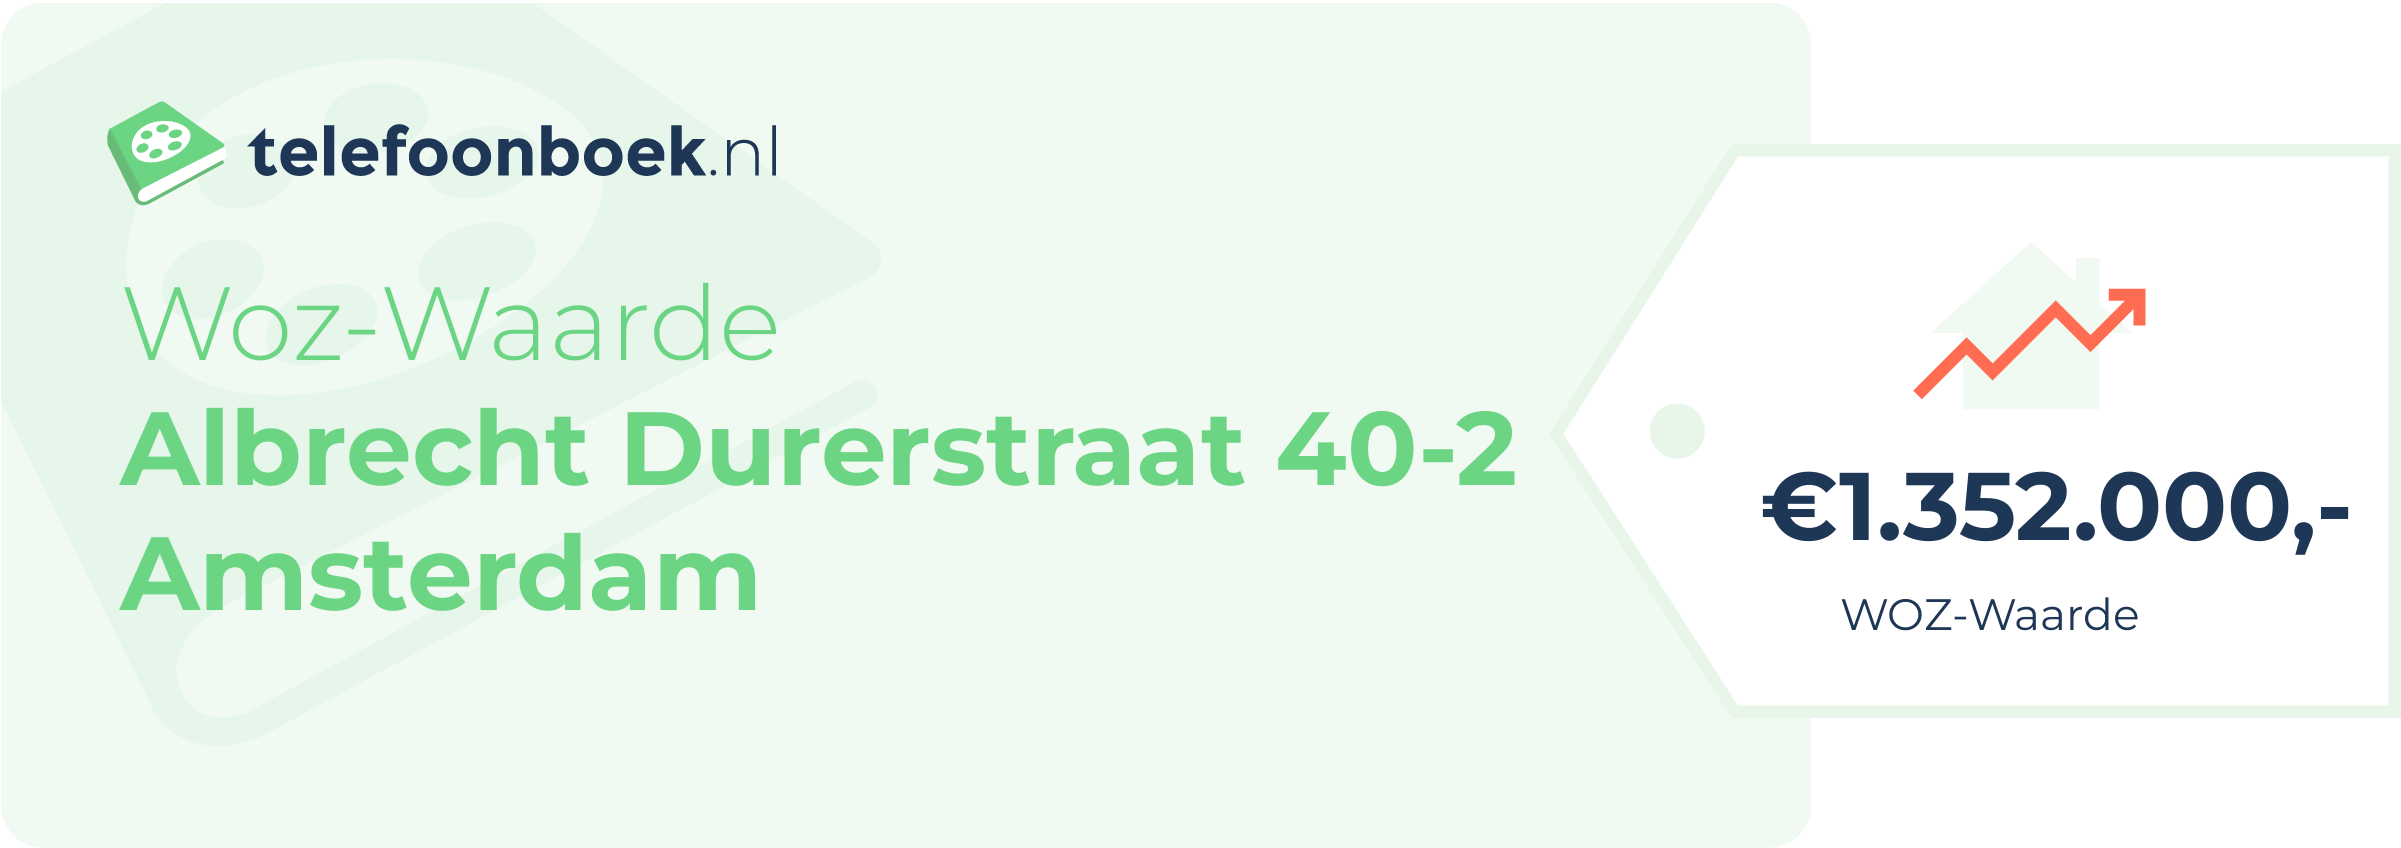 WOZ-waarde Albrecht Durerstraat 40-2 Amsterdam